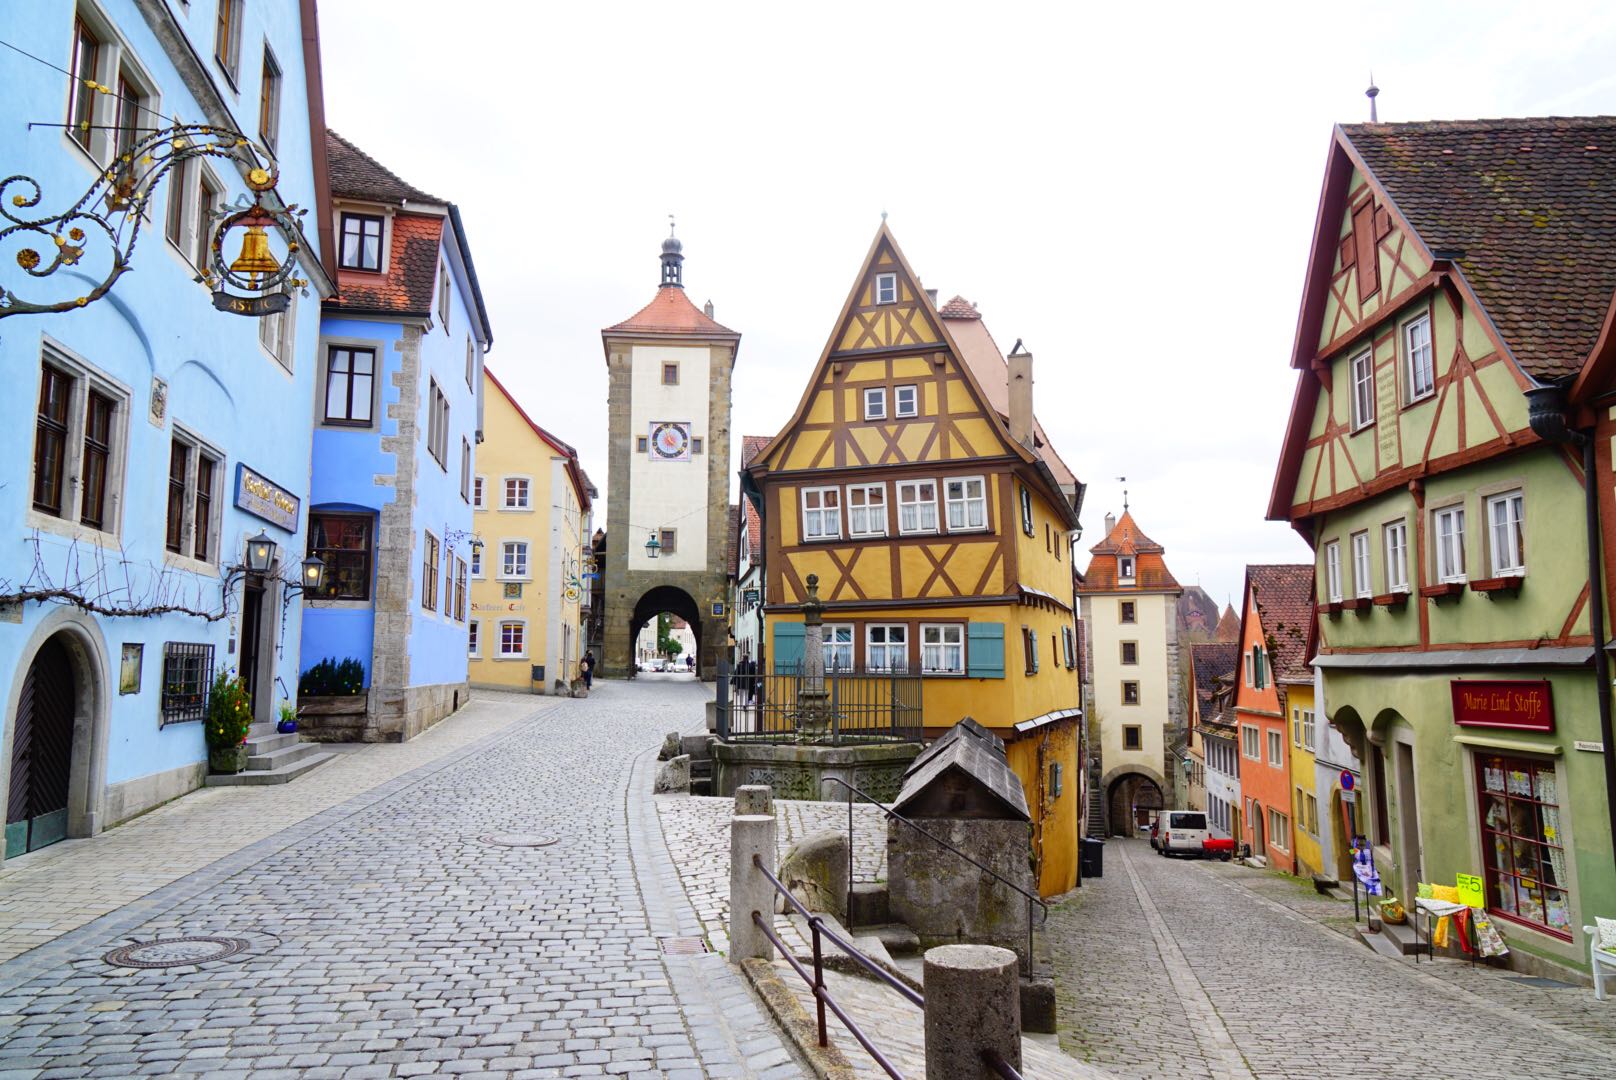 เมือง Rothenburg ob der tauber กับ Nuremberg - Pantip